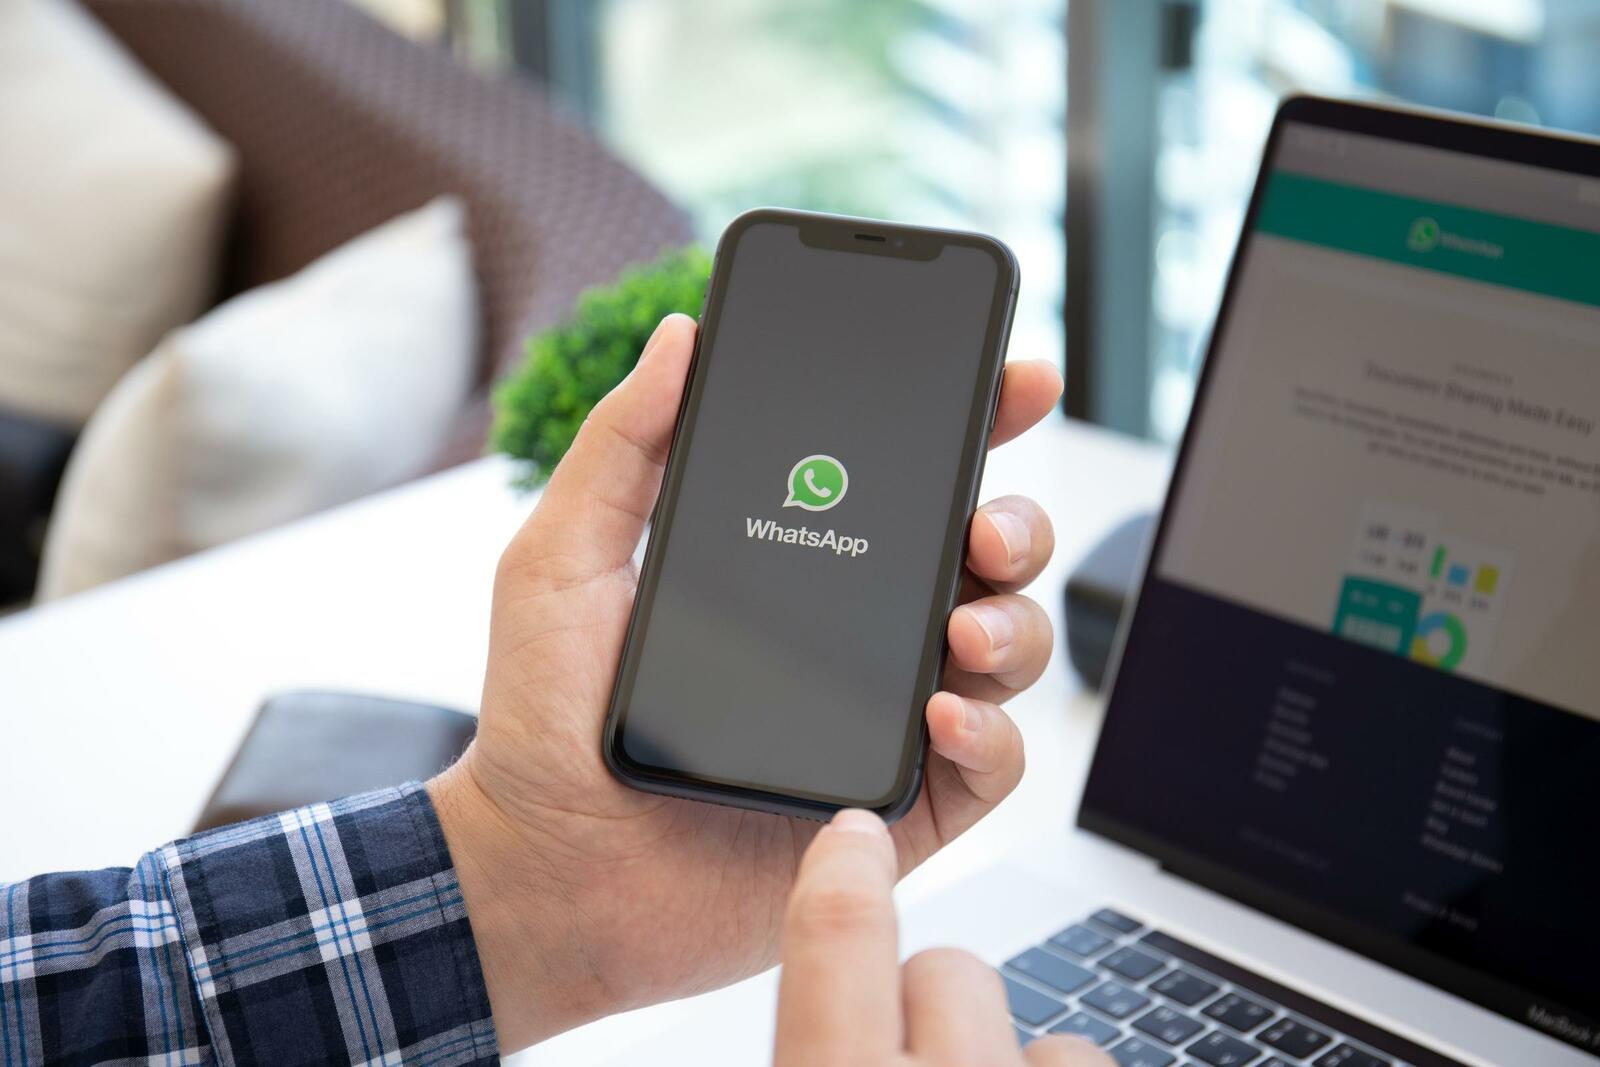 Kommunikation per Whatsapp ist im Alltag präsent. Doch für die Übermittlung einer Kündigung ist der Messenger ungeeignet.